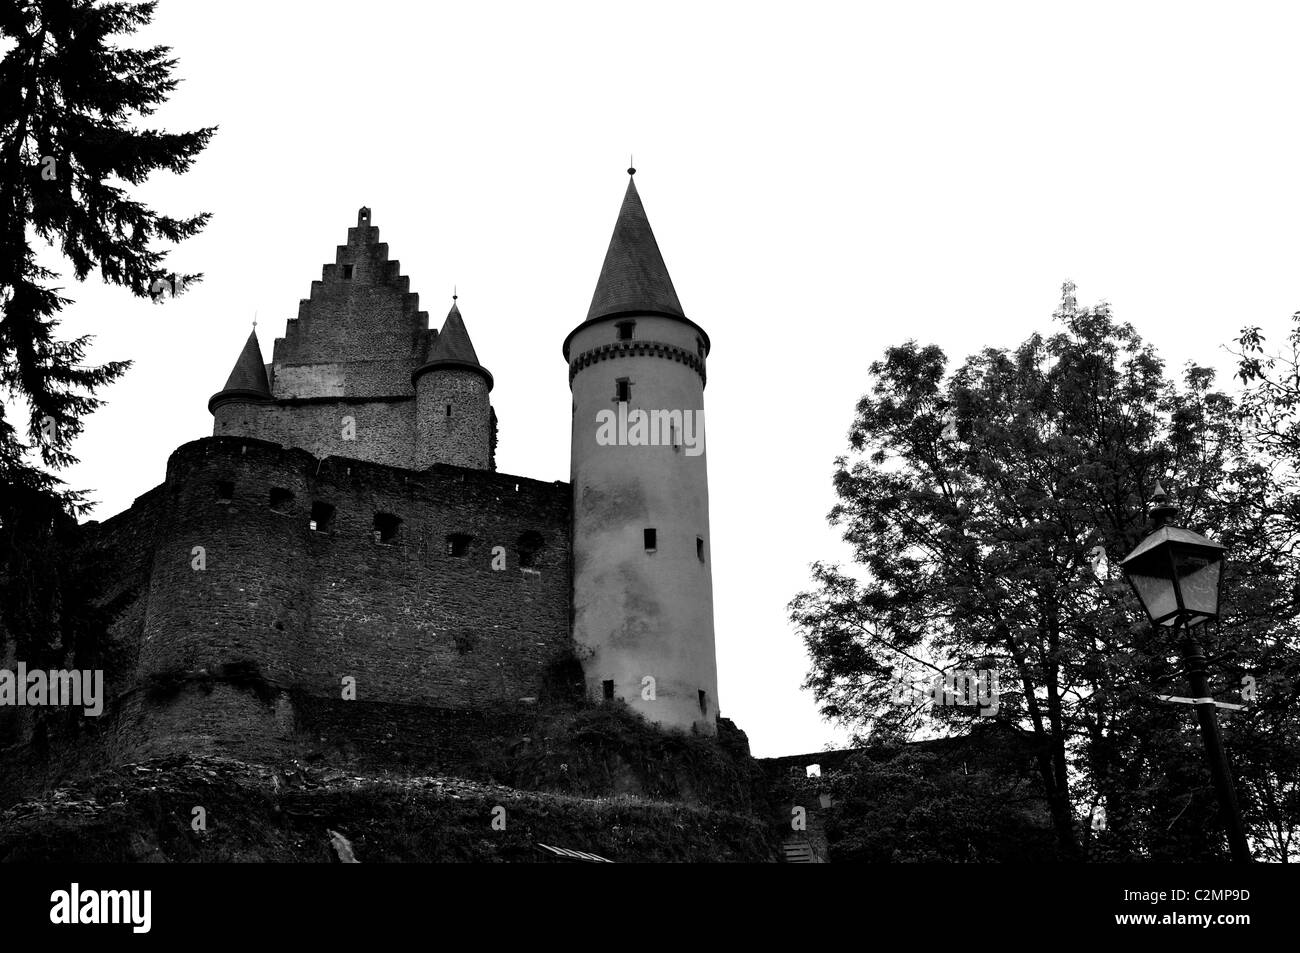 El castillo de Vianden, Luxemburgo Foto de stock